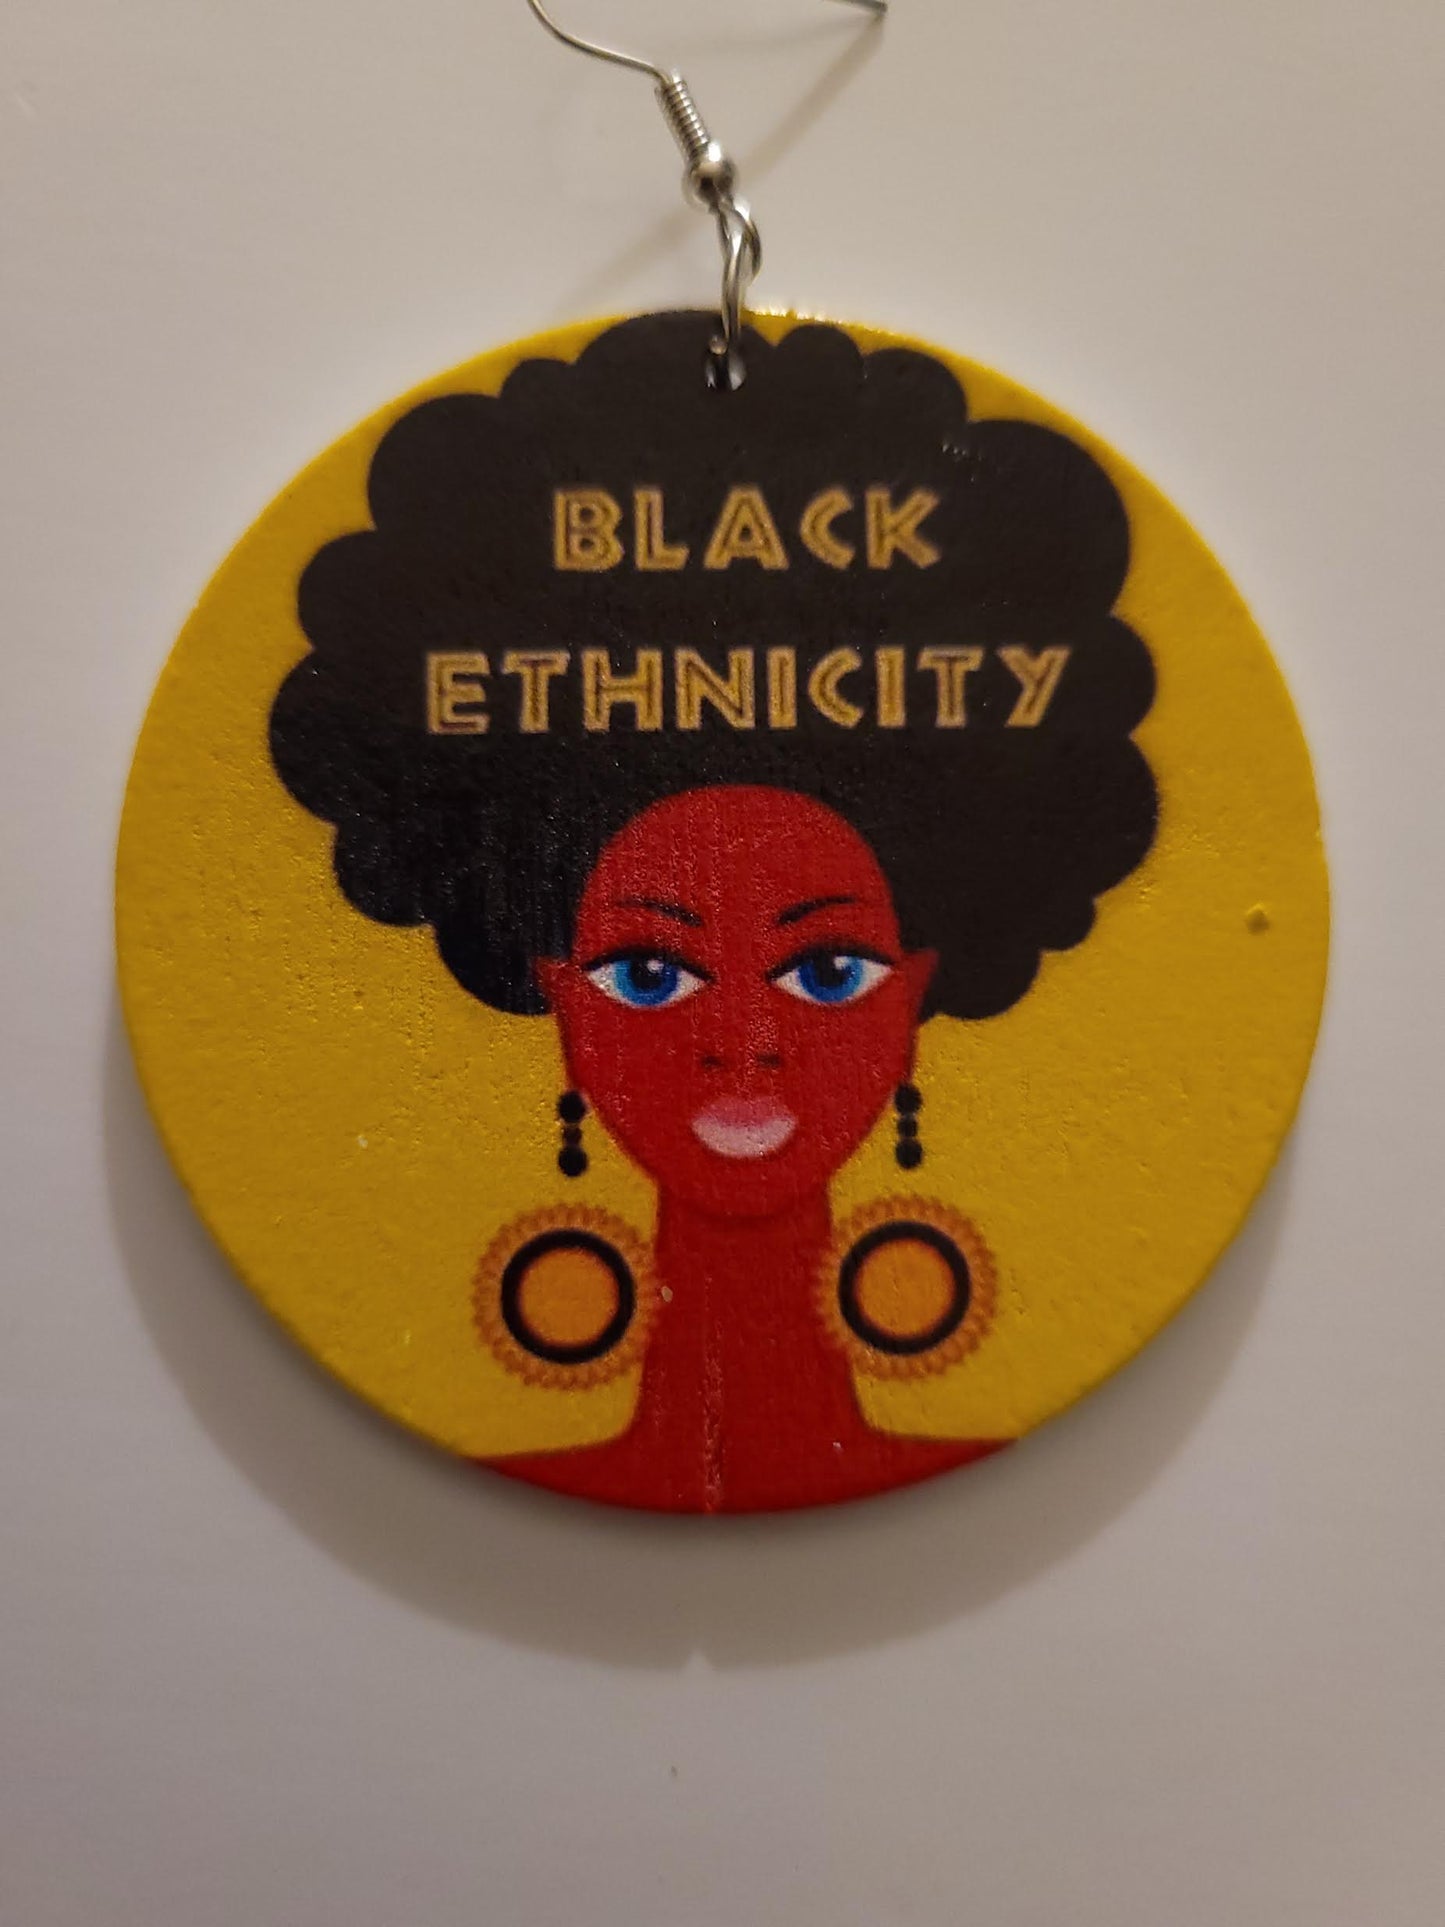 Black Ethnicity